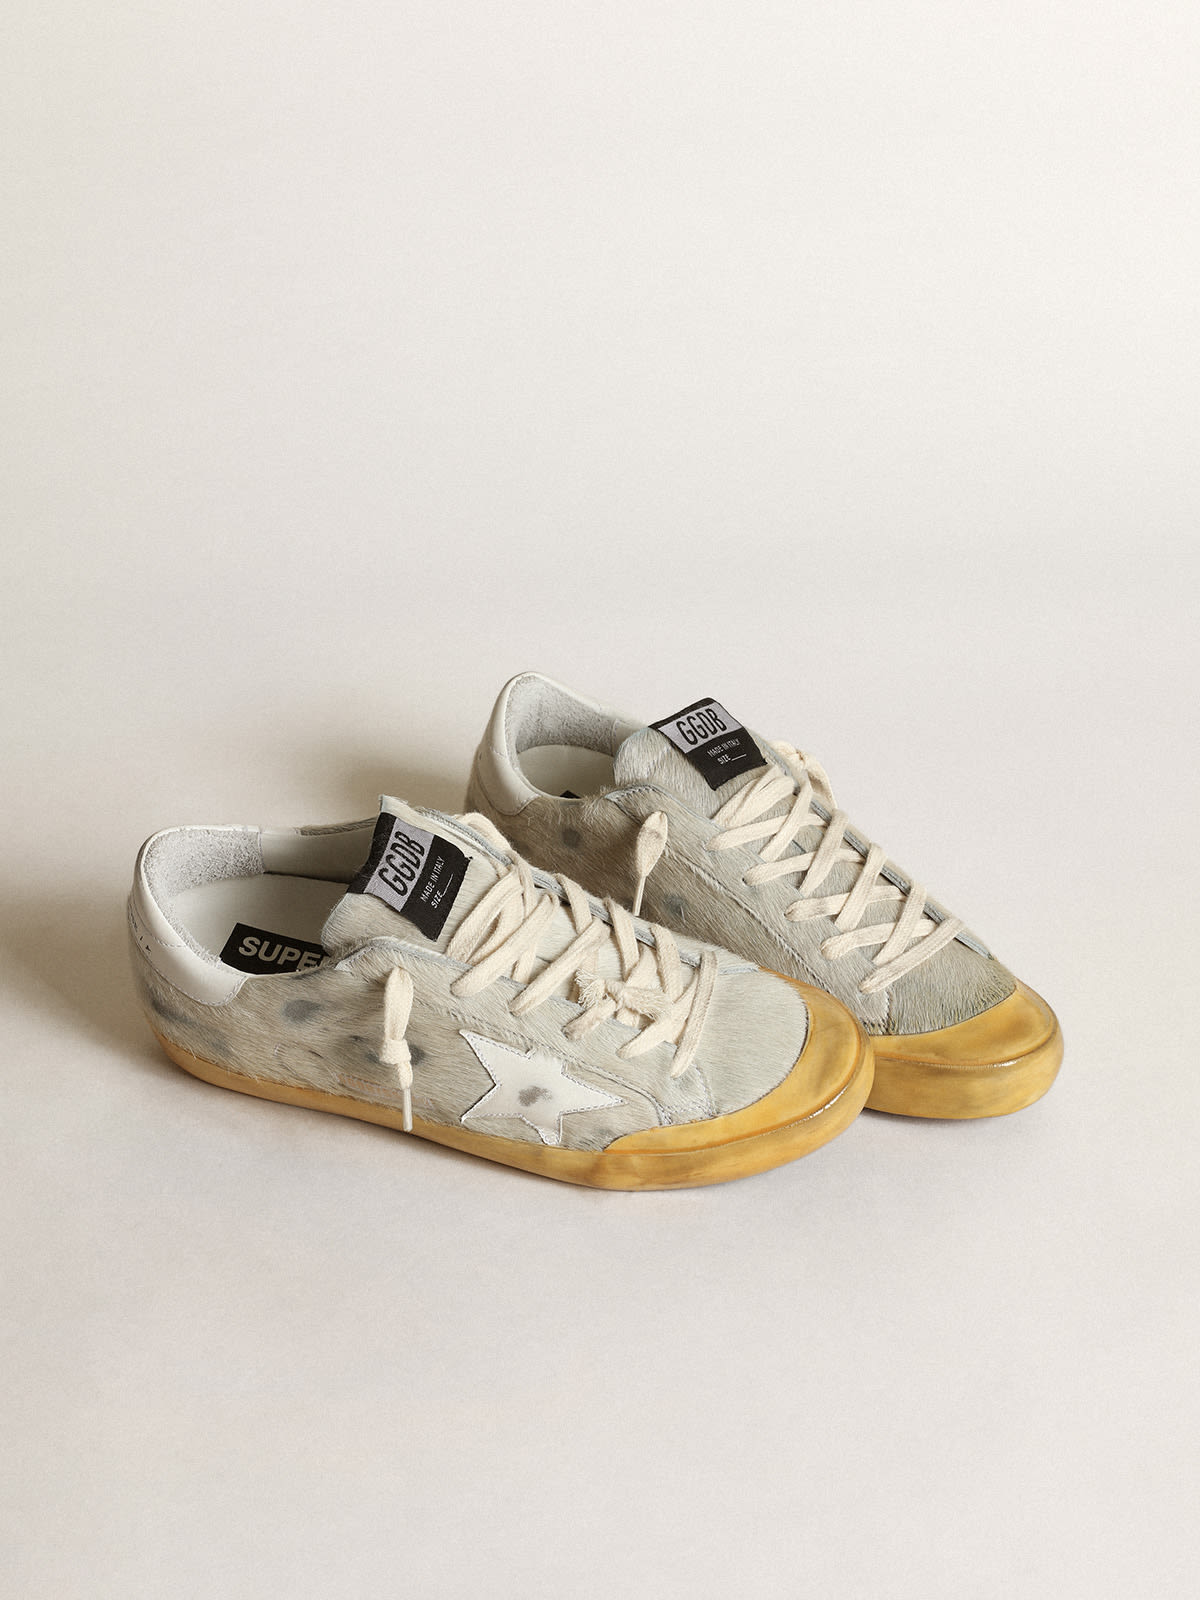 Golden Goose - Sneaker Super-Star Penstar aus Cavallino-Leder in Dirty-White mit Stern und Fersenpartie aus weißem Leder in 